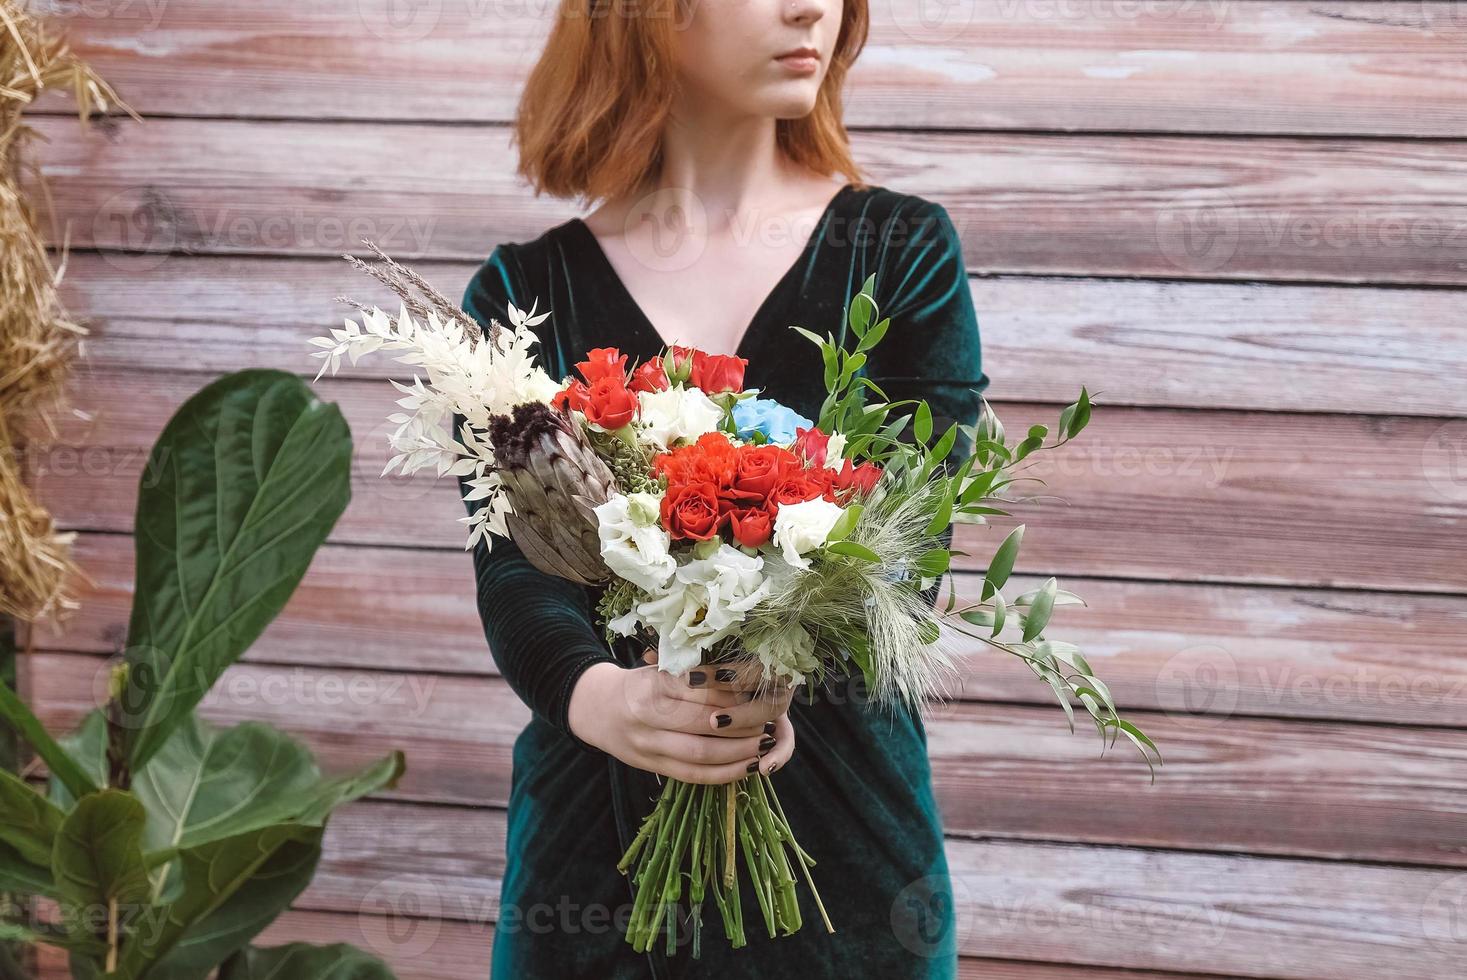 linda garota de vestido verde, segurando um buquê de flores e hortaliças em um fundo de madeira. copiar, espaço vazio para texto foto